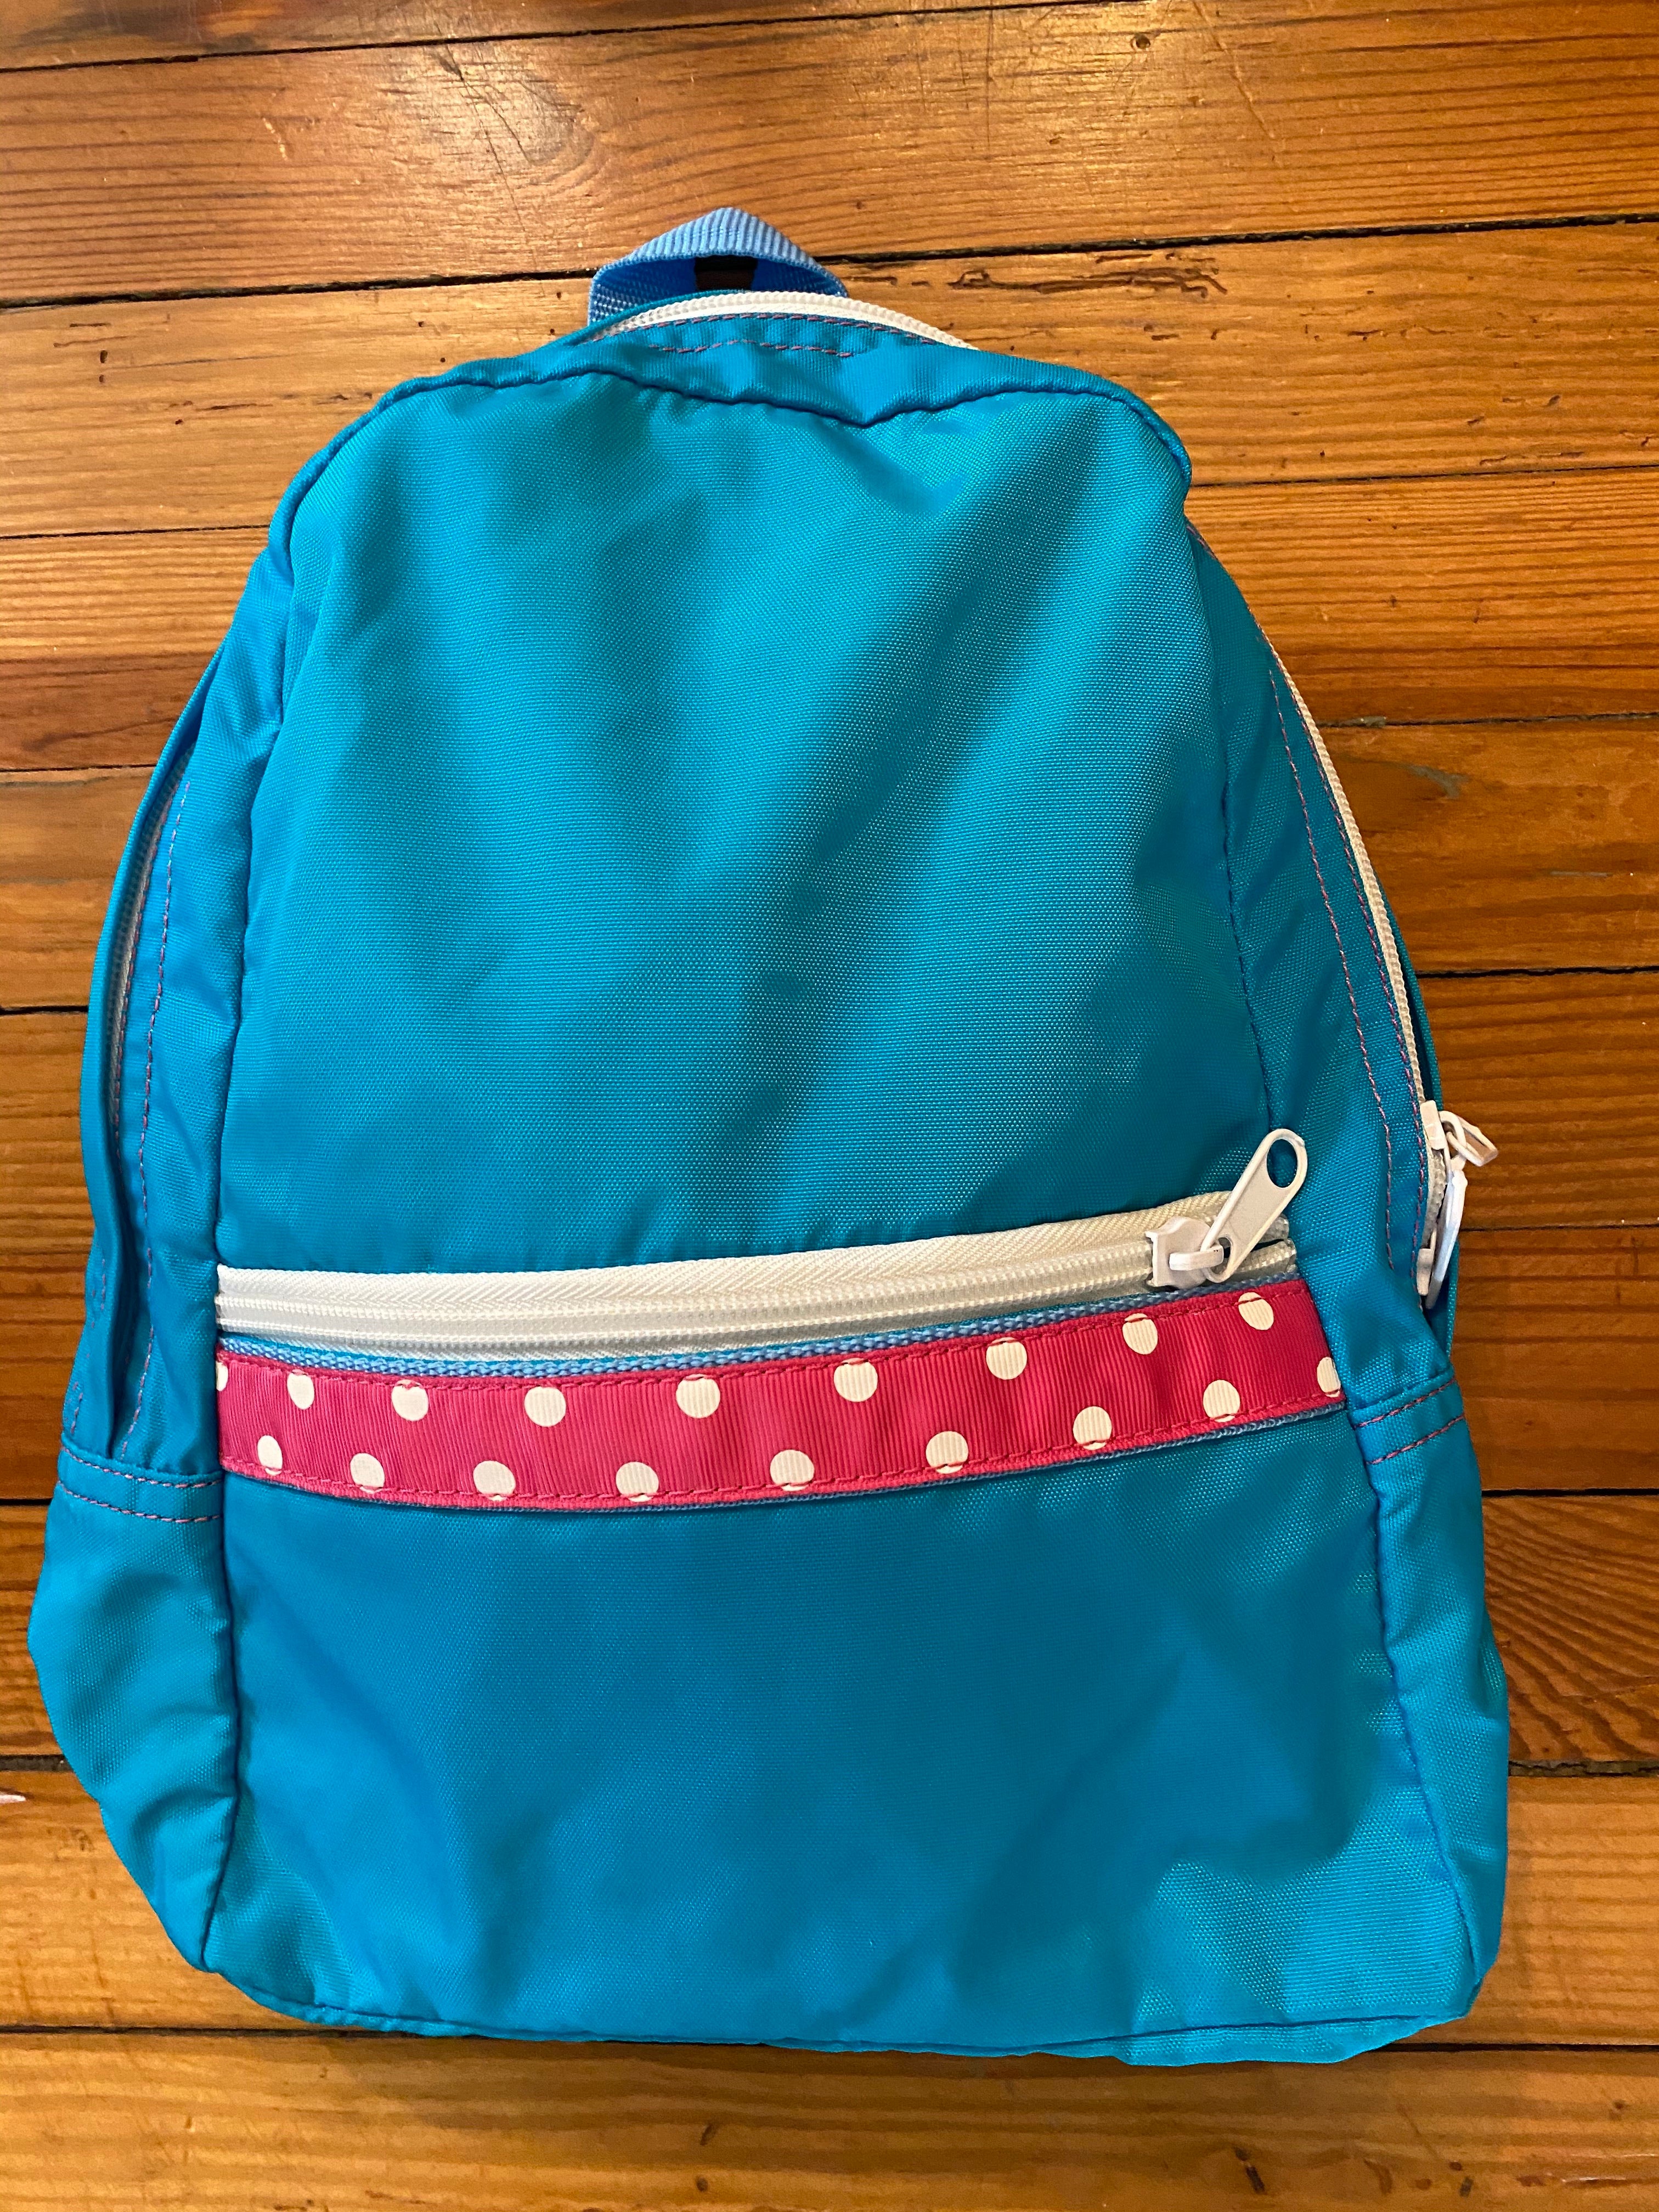 Children’s Backpacks